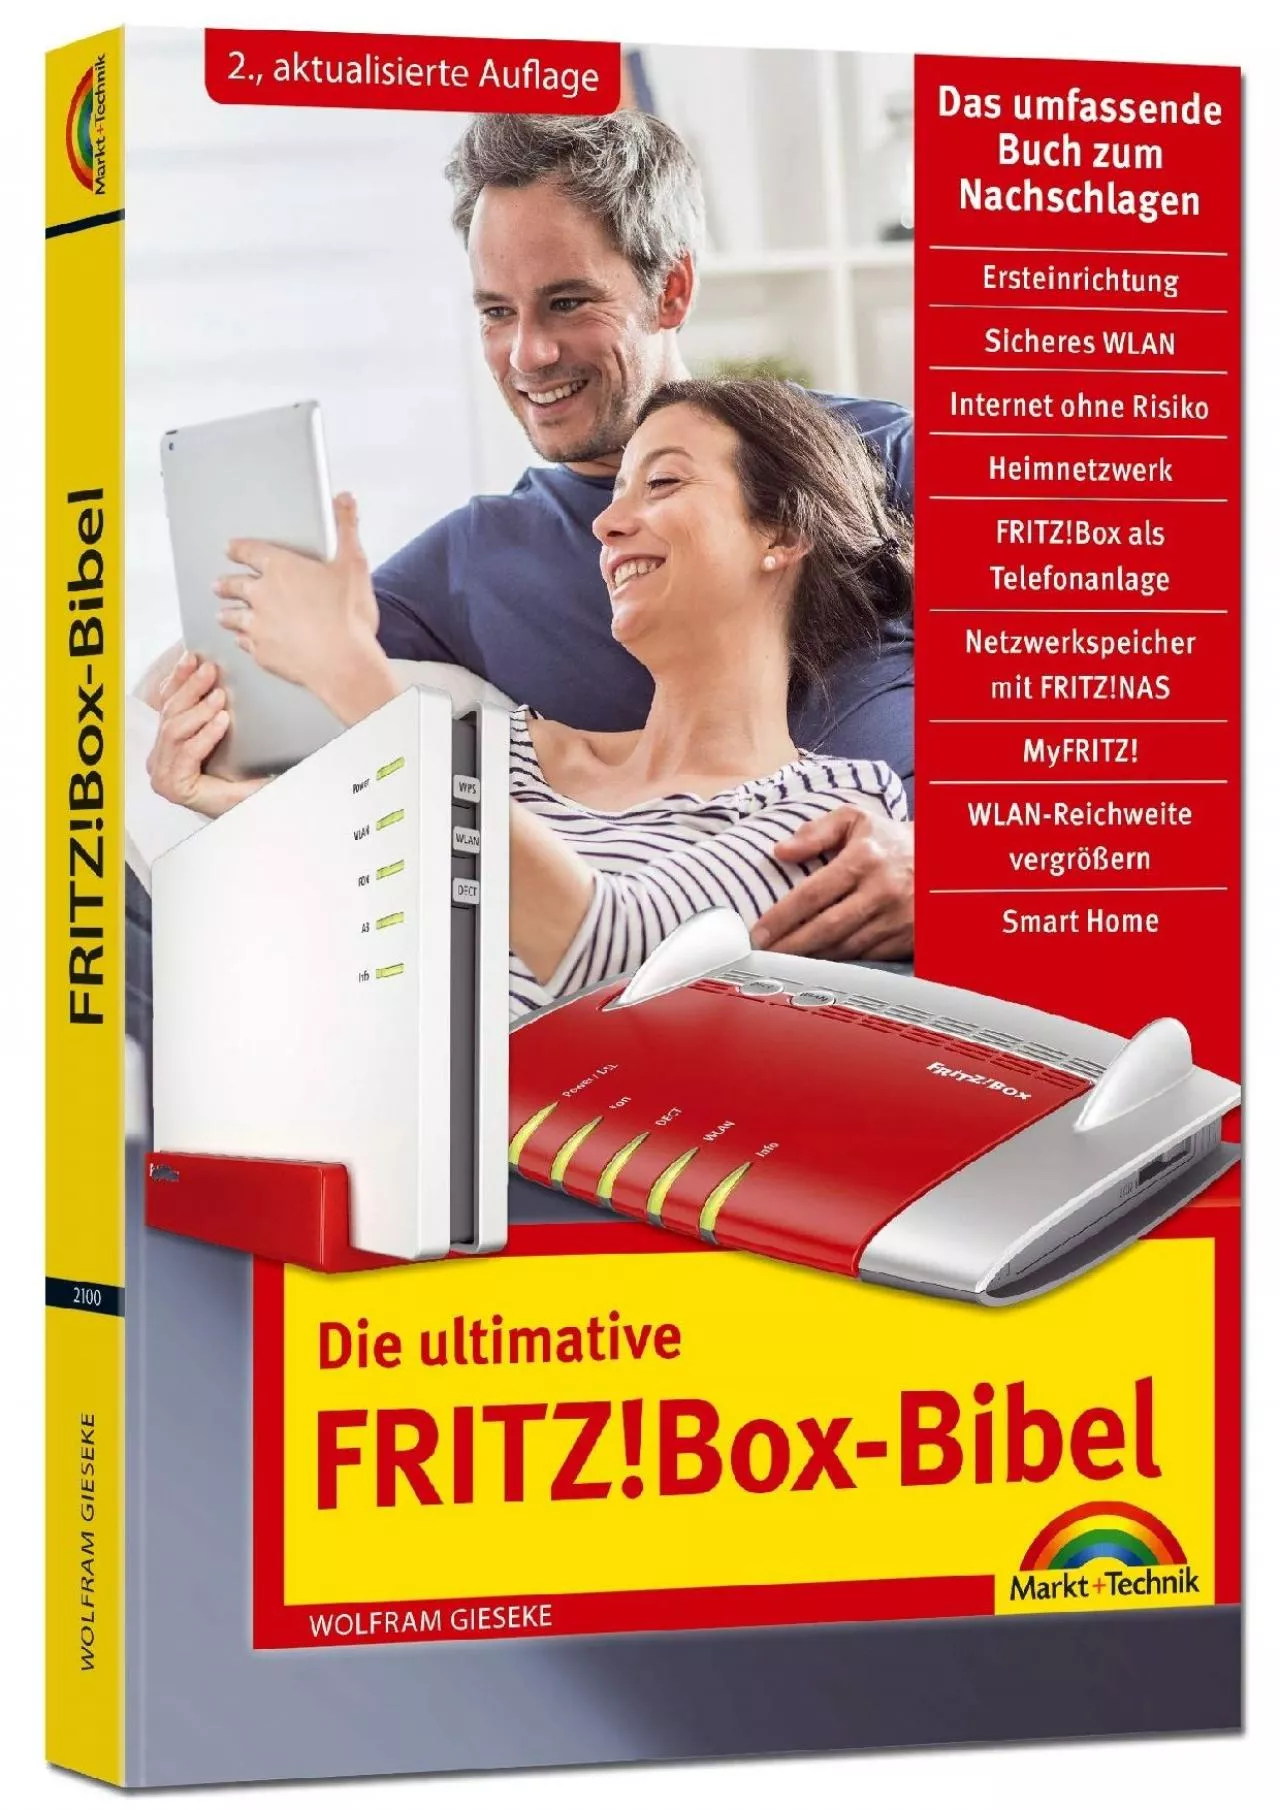 [READ]-Die ultimative FRITZBox Bibel - Das Praxisbuch 2. aktualisierte Auflage - mit vielen